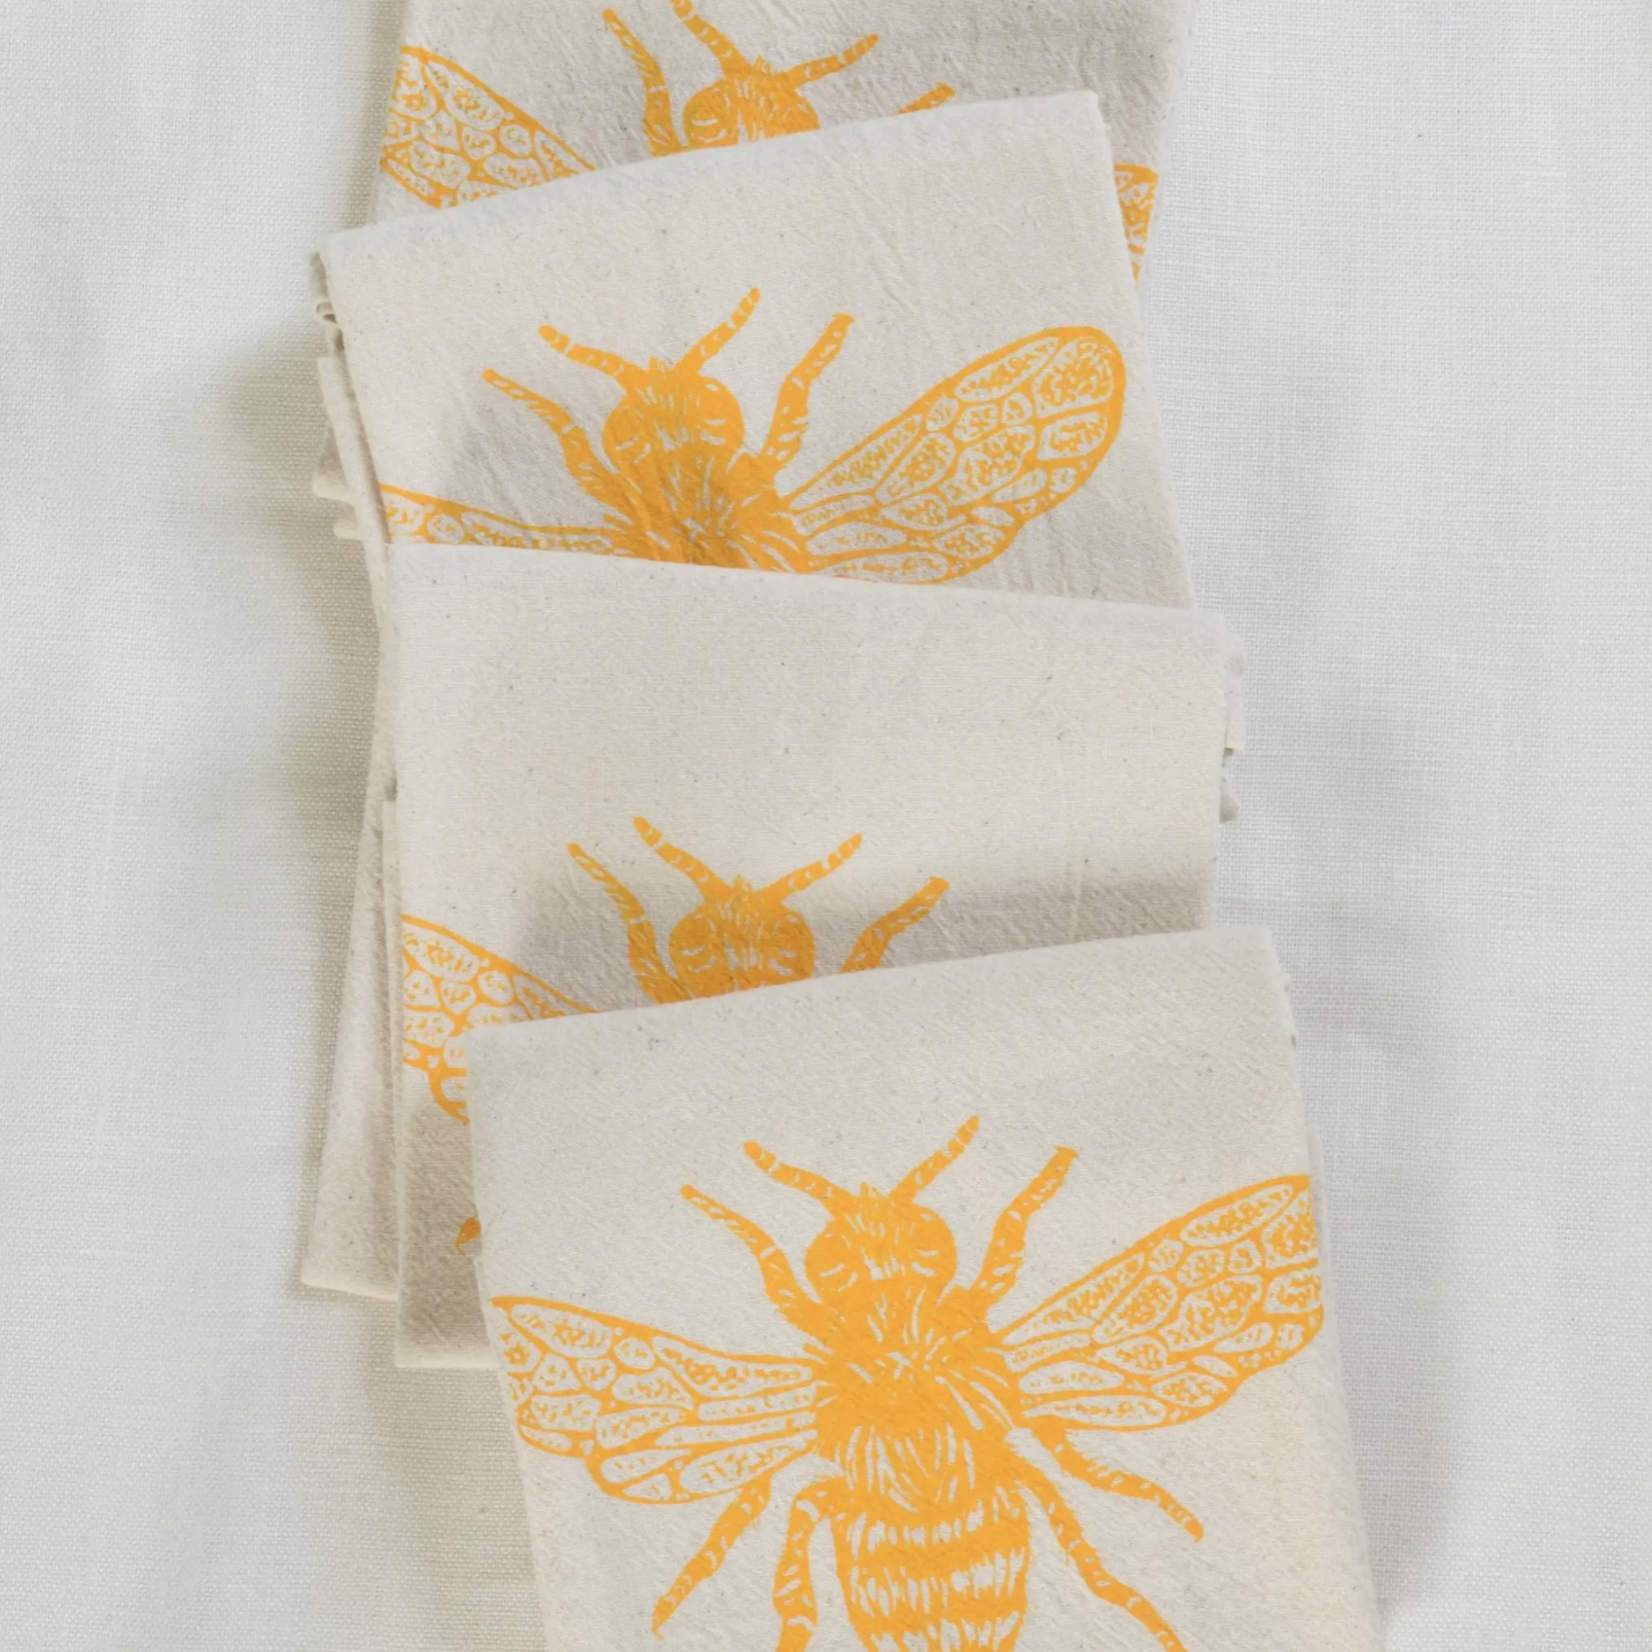 Hearth and Harrow organic honeybee cloth napkins (set of 4)